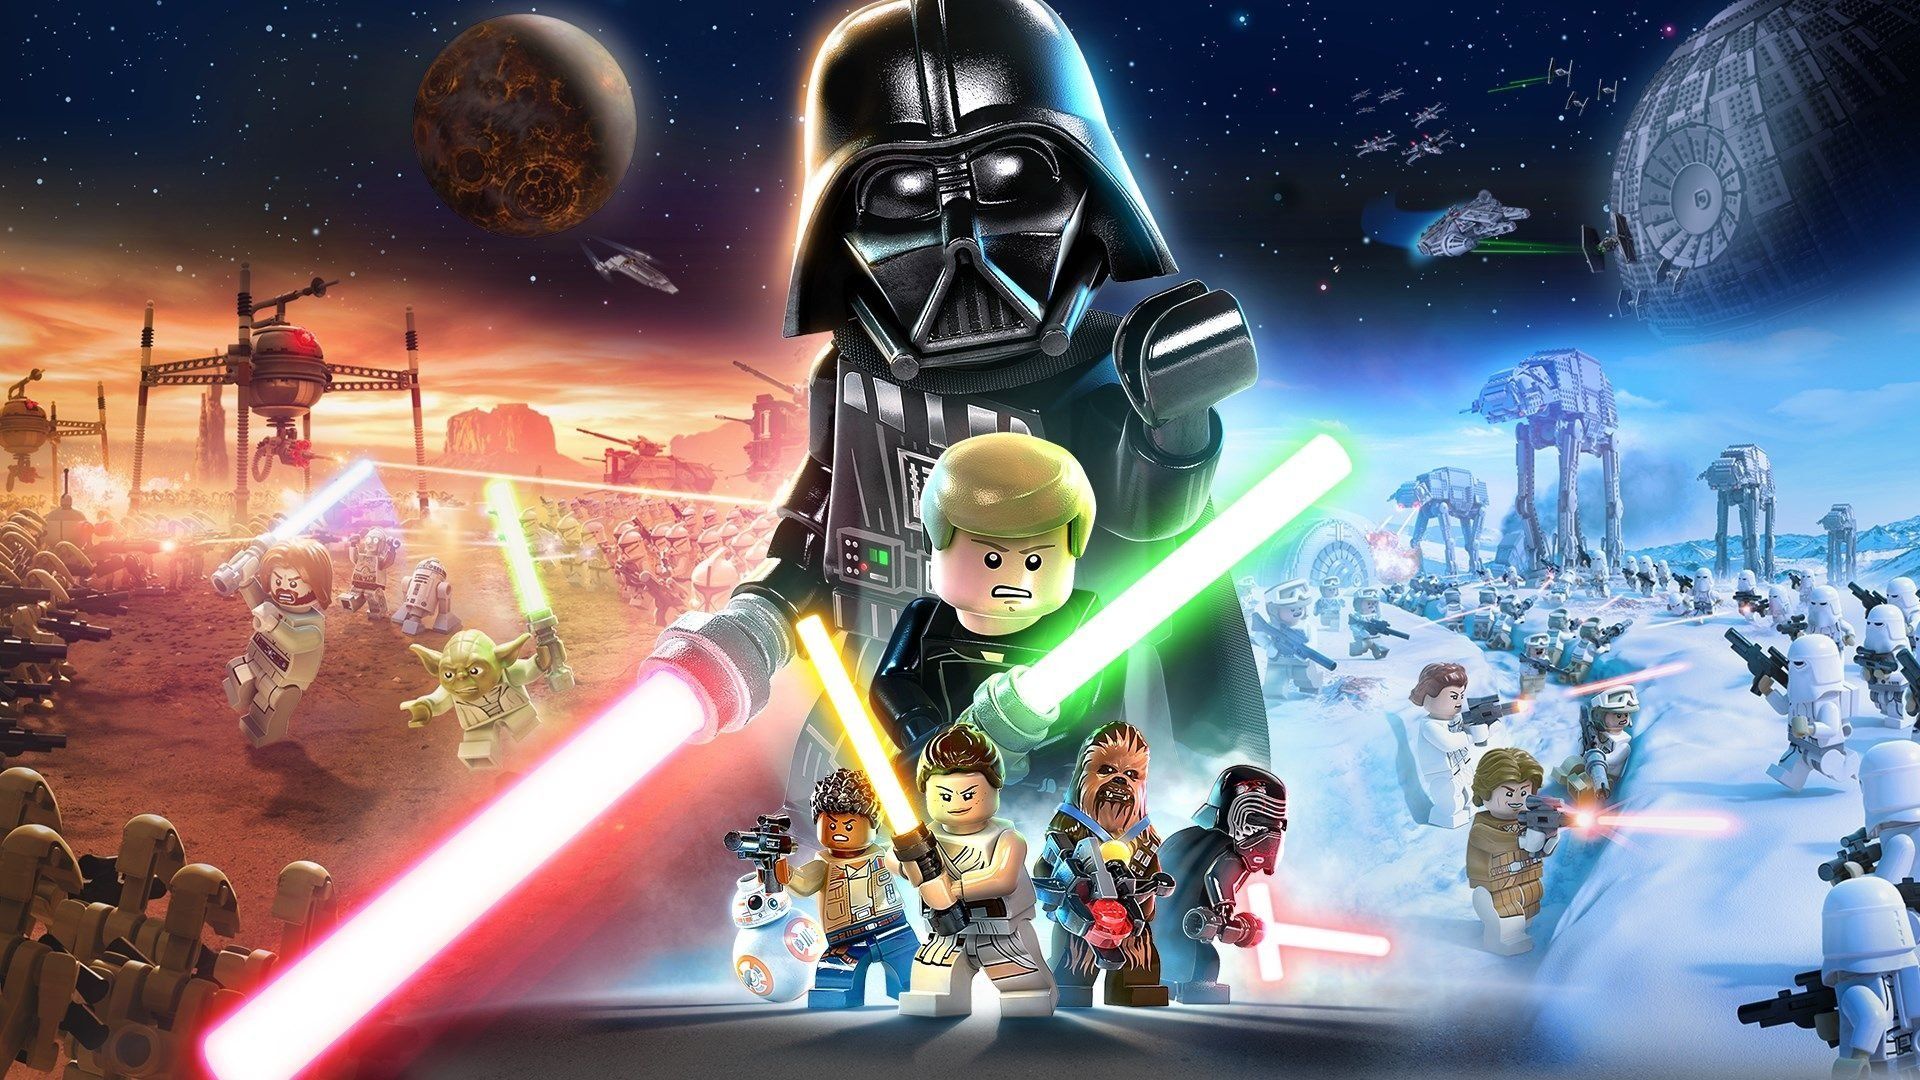 LLega la nueva aventura de Lego Star War en todas las plataformas